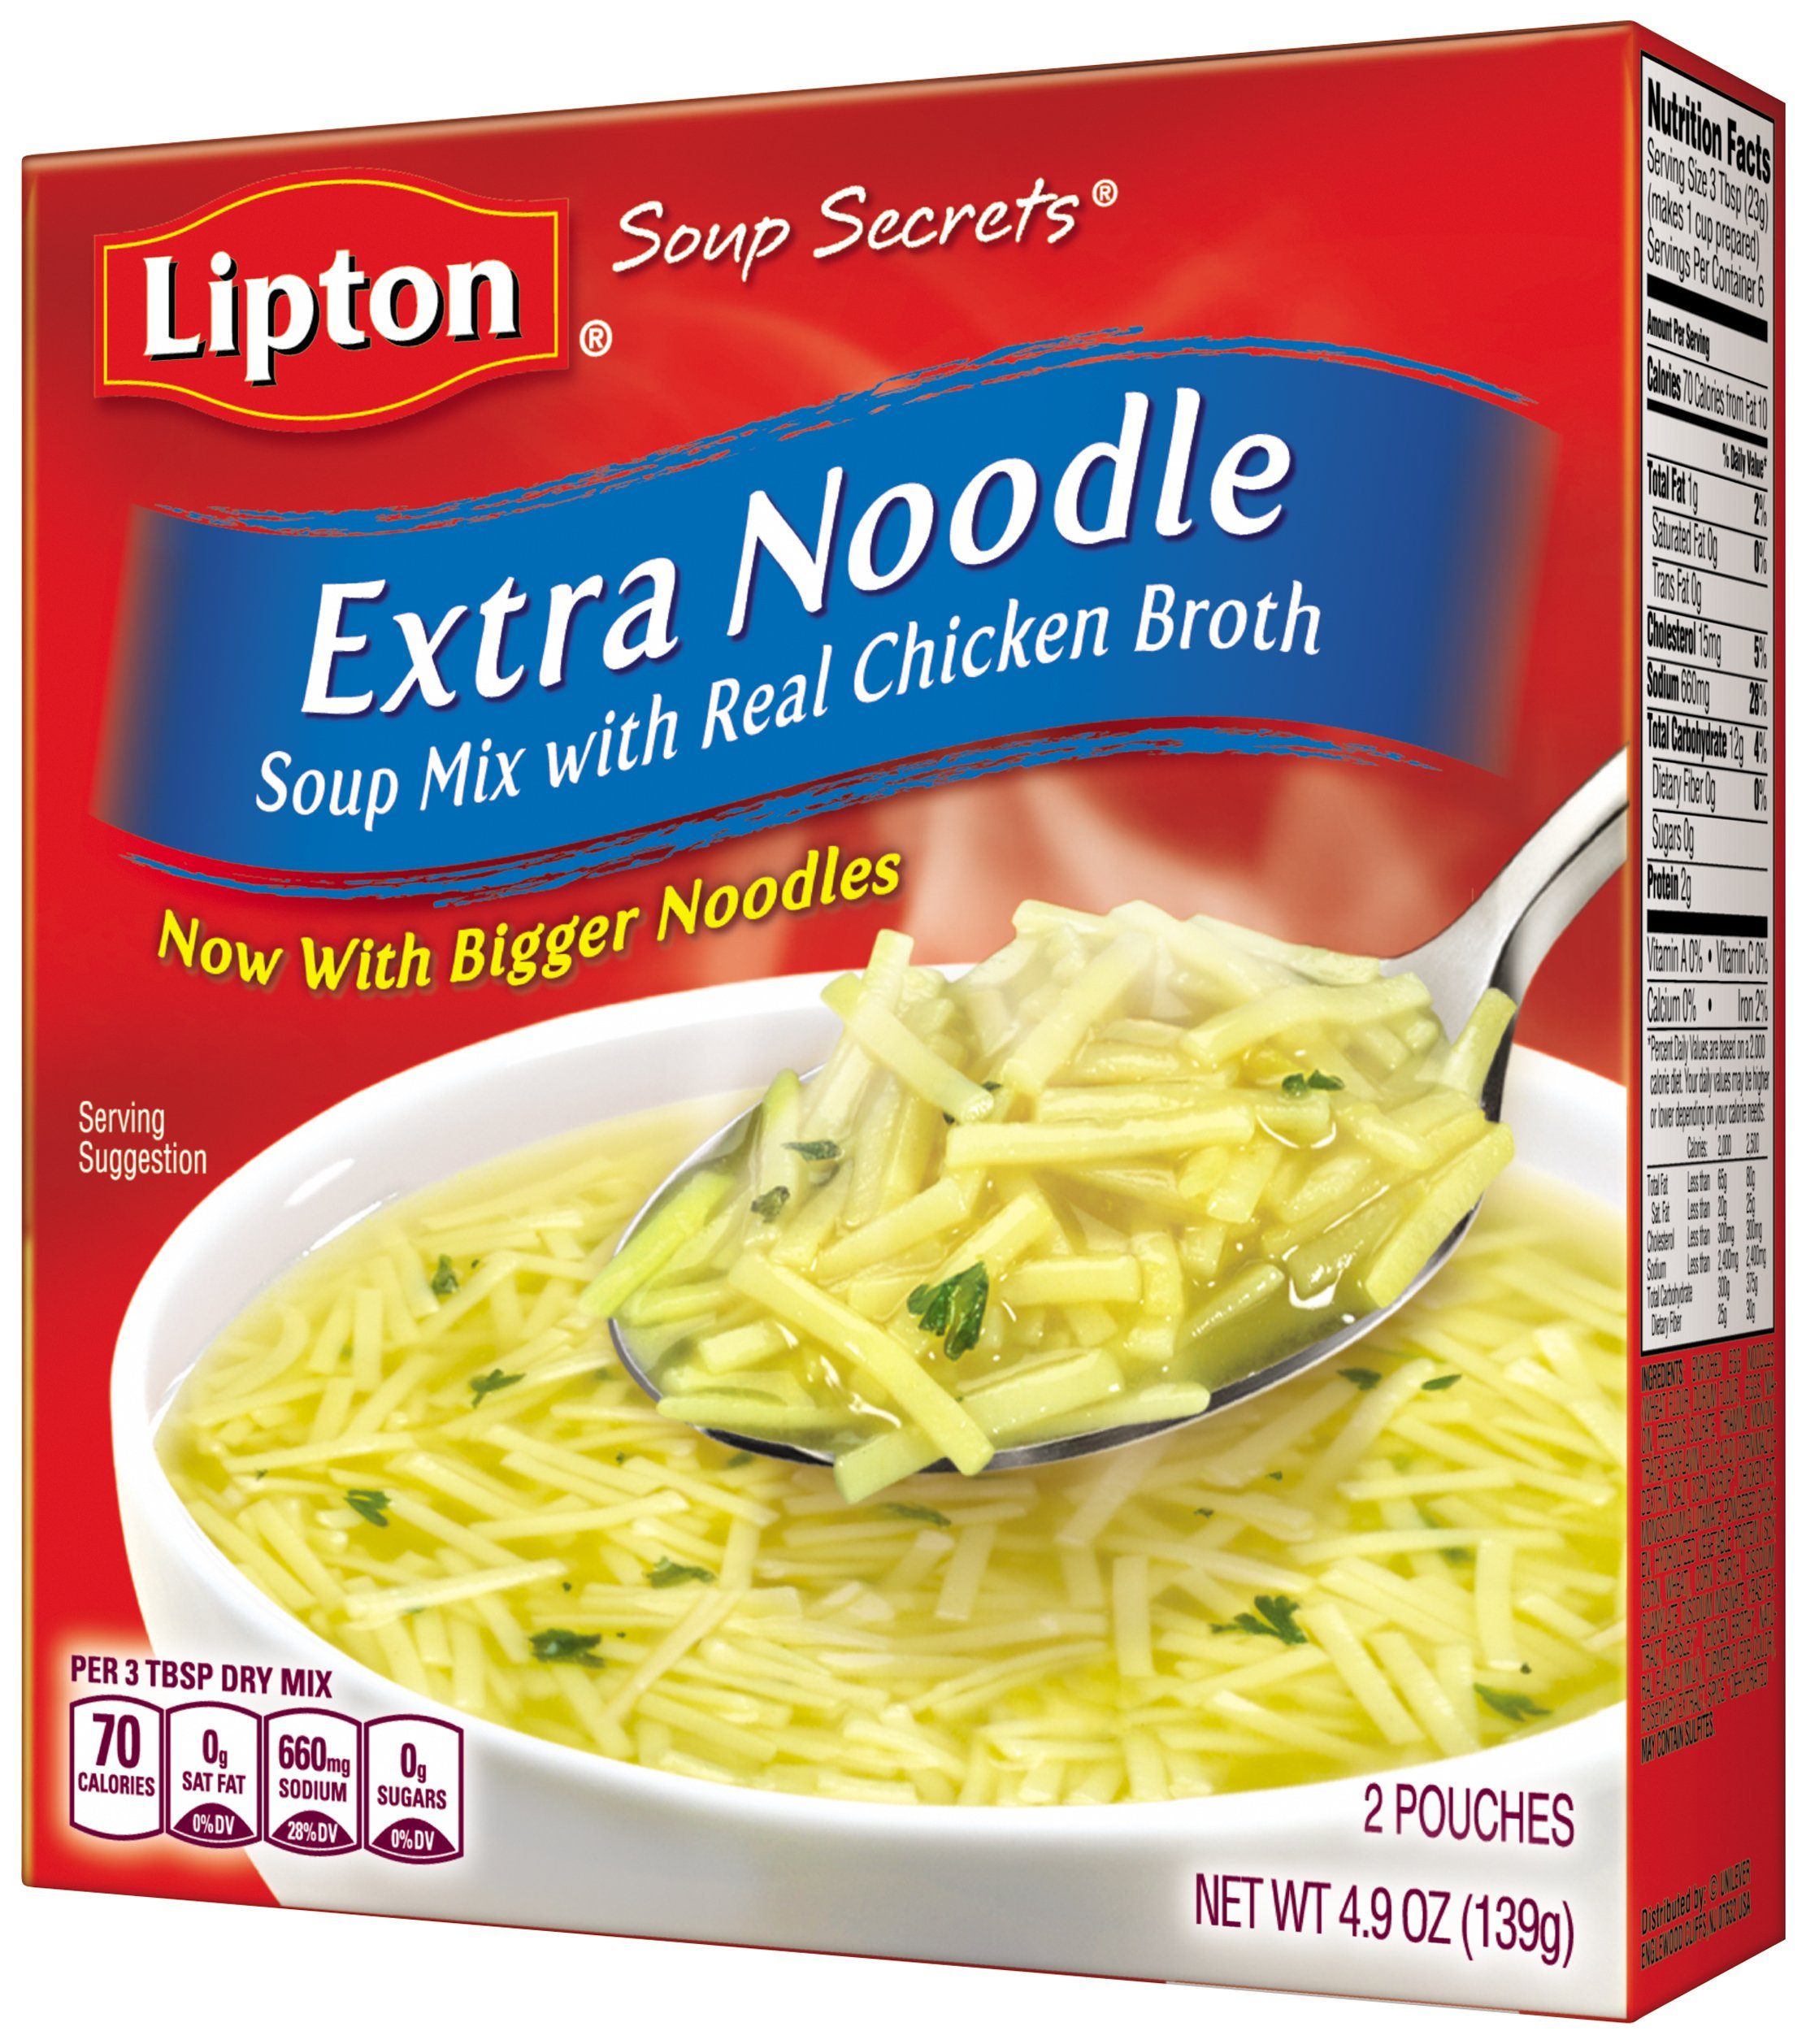 Lipton Soup Secrets Extra Noodle Soup Mix